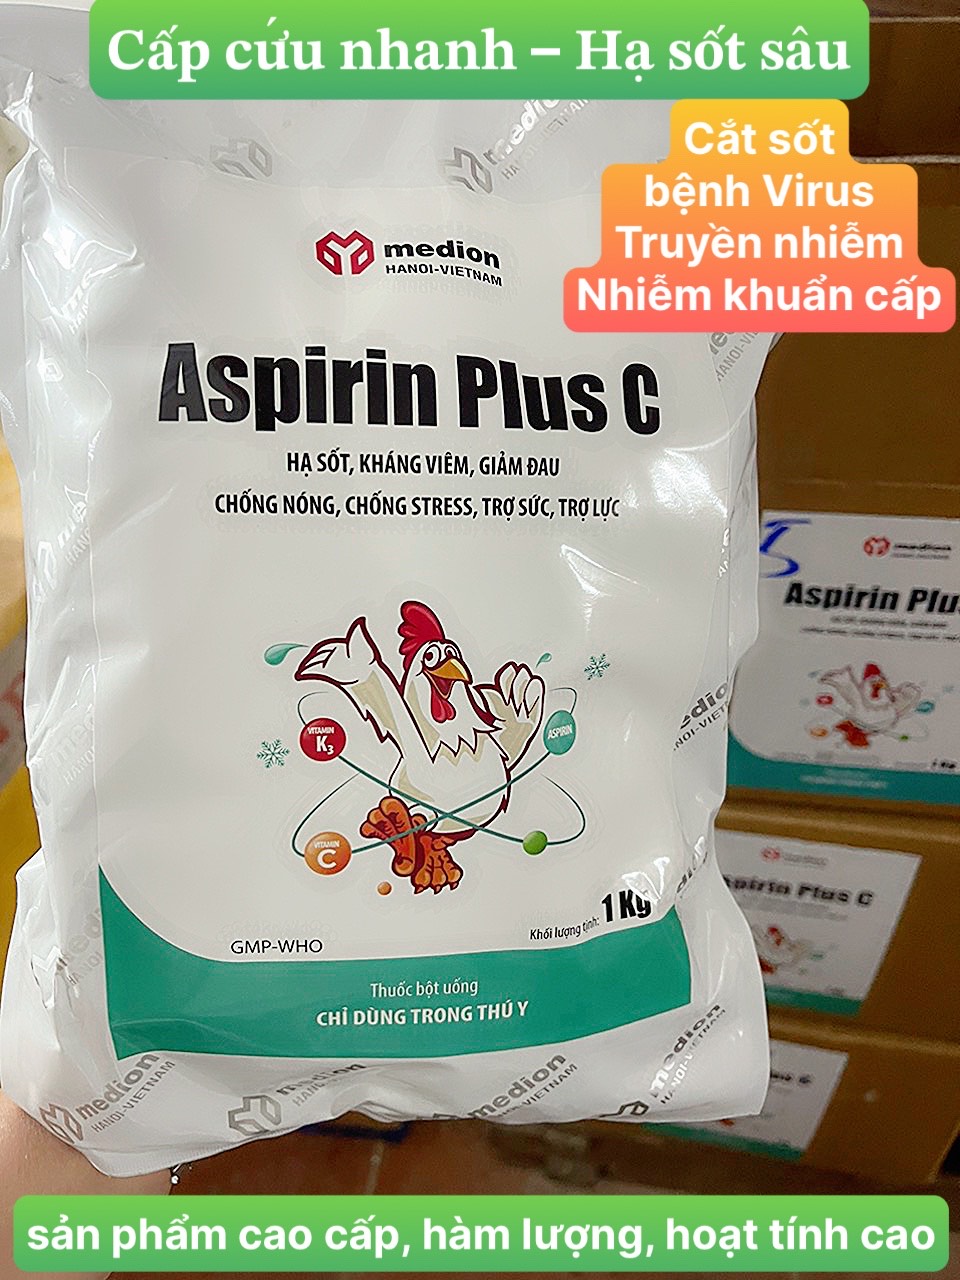 Hạ sốt vật nuôi ASPIRIN PLUS C hàm lượng và hoạt tính cao ngắt sốt tức thì. 1 gói 1Kg dùng được 10 tấn thể trọng vật nuôi. An toàn lành tính hơn nhiều Para C hay Anagin dùng trong chăn nuôi thú y